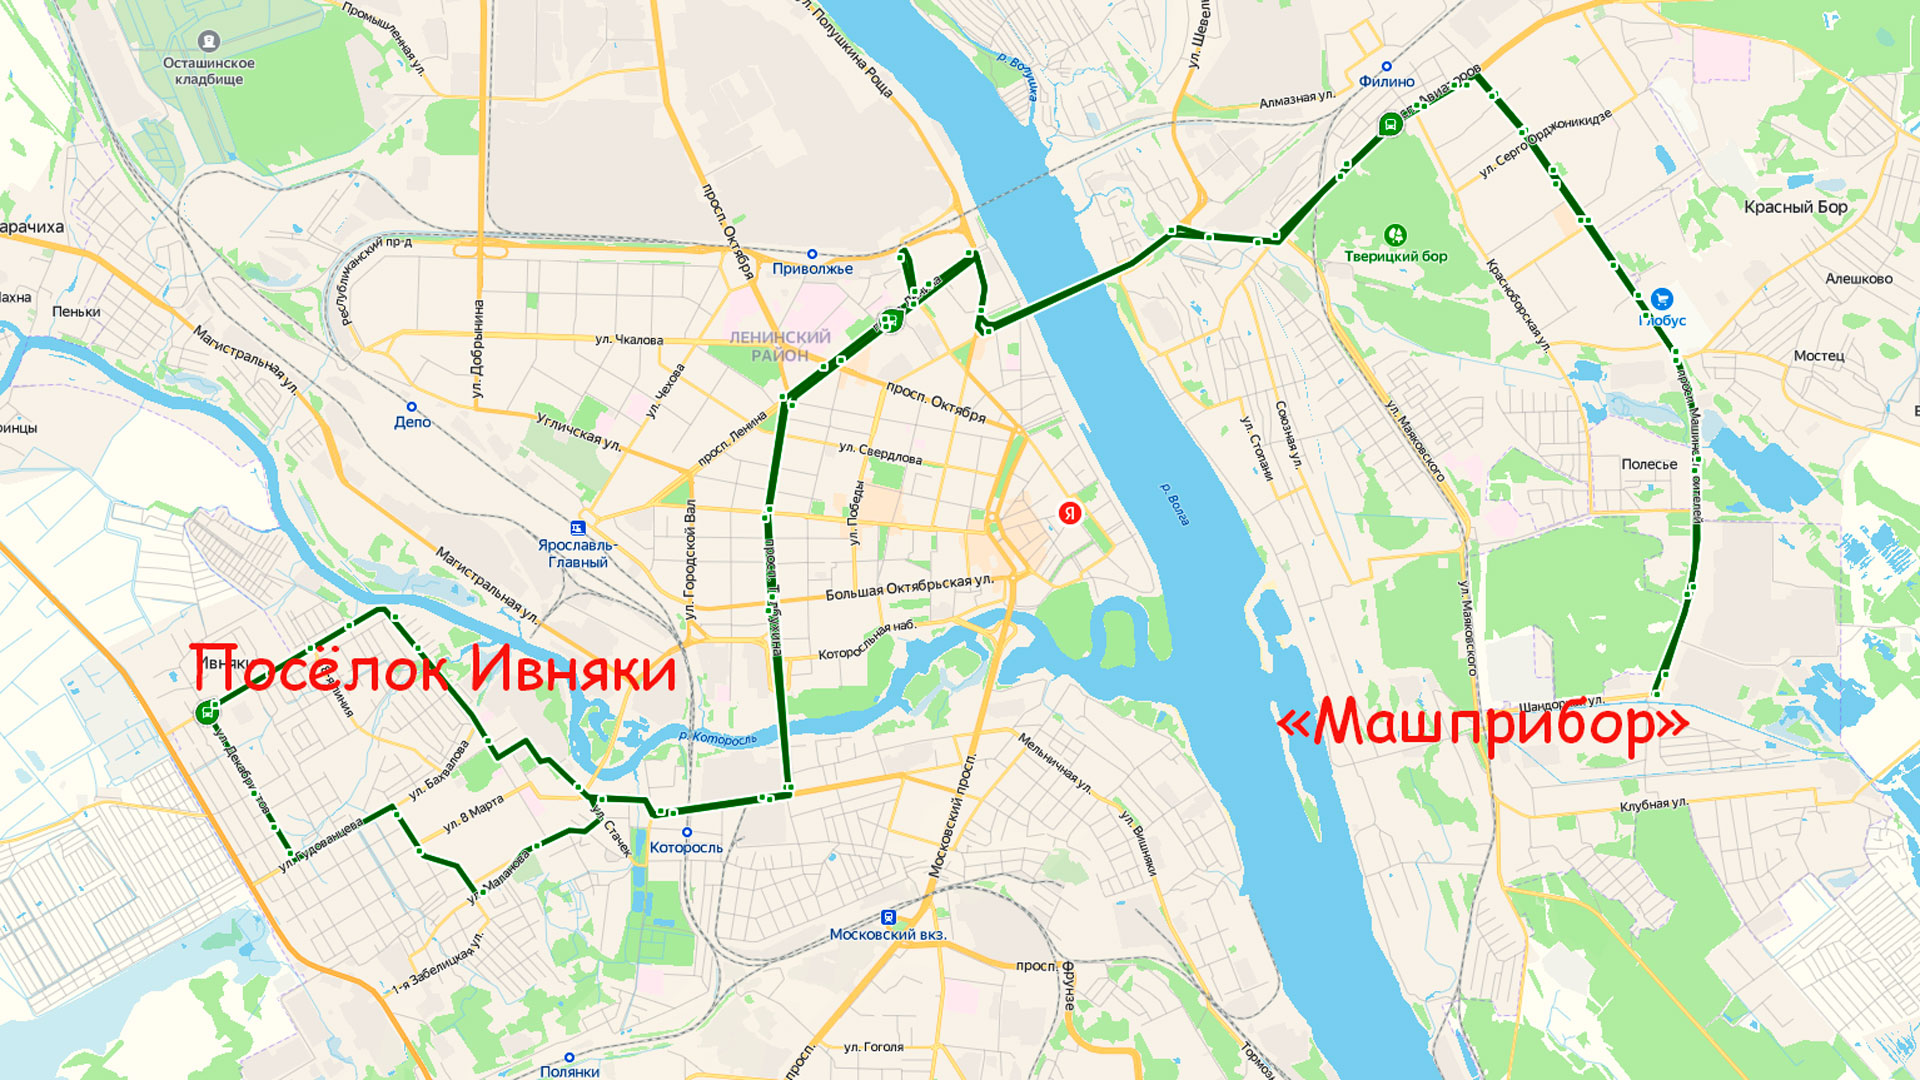 Маршрут автобуса 85 в Ярославле на карте.